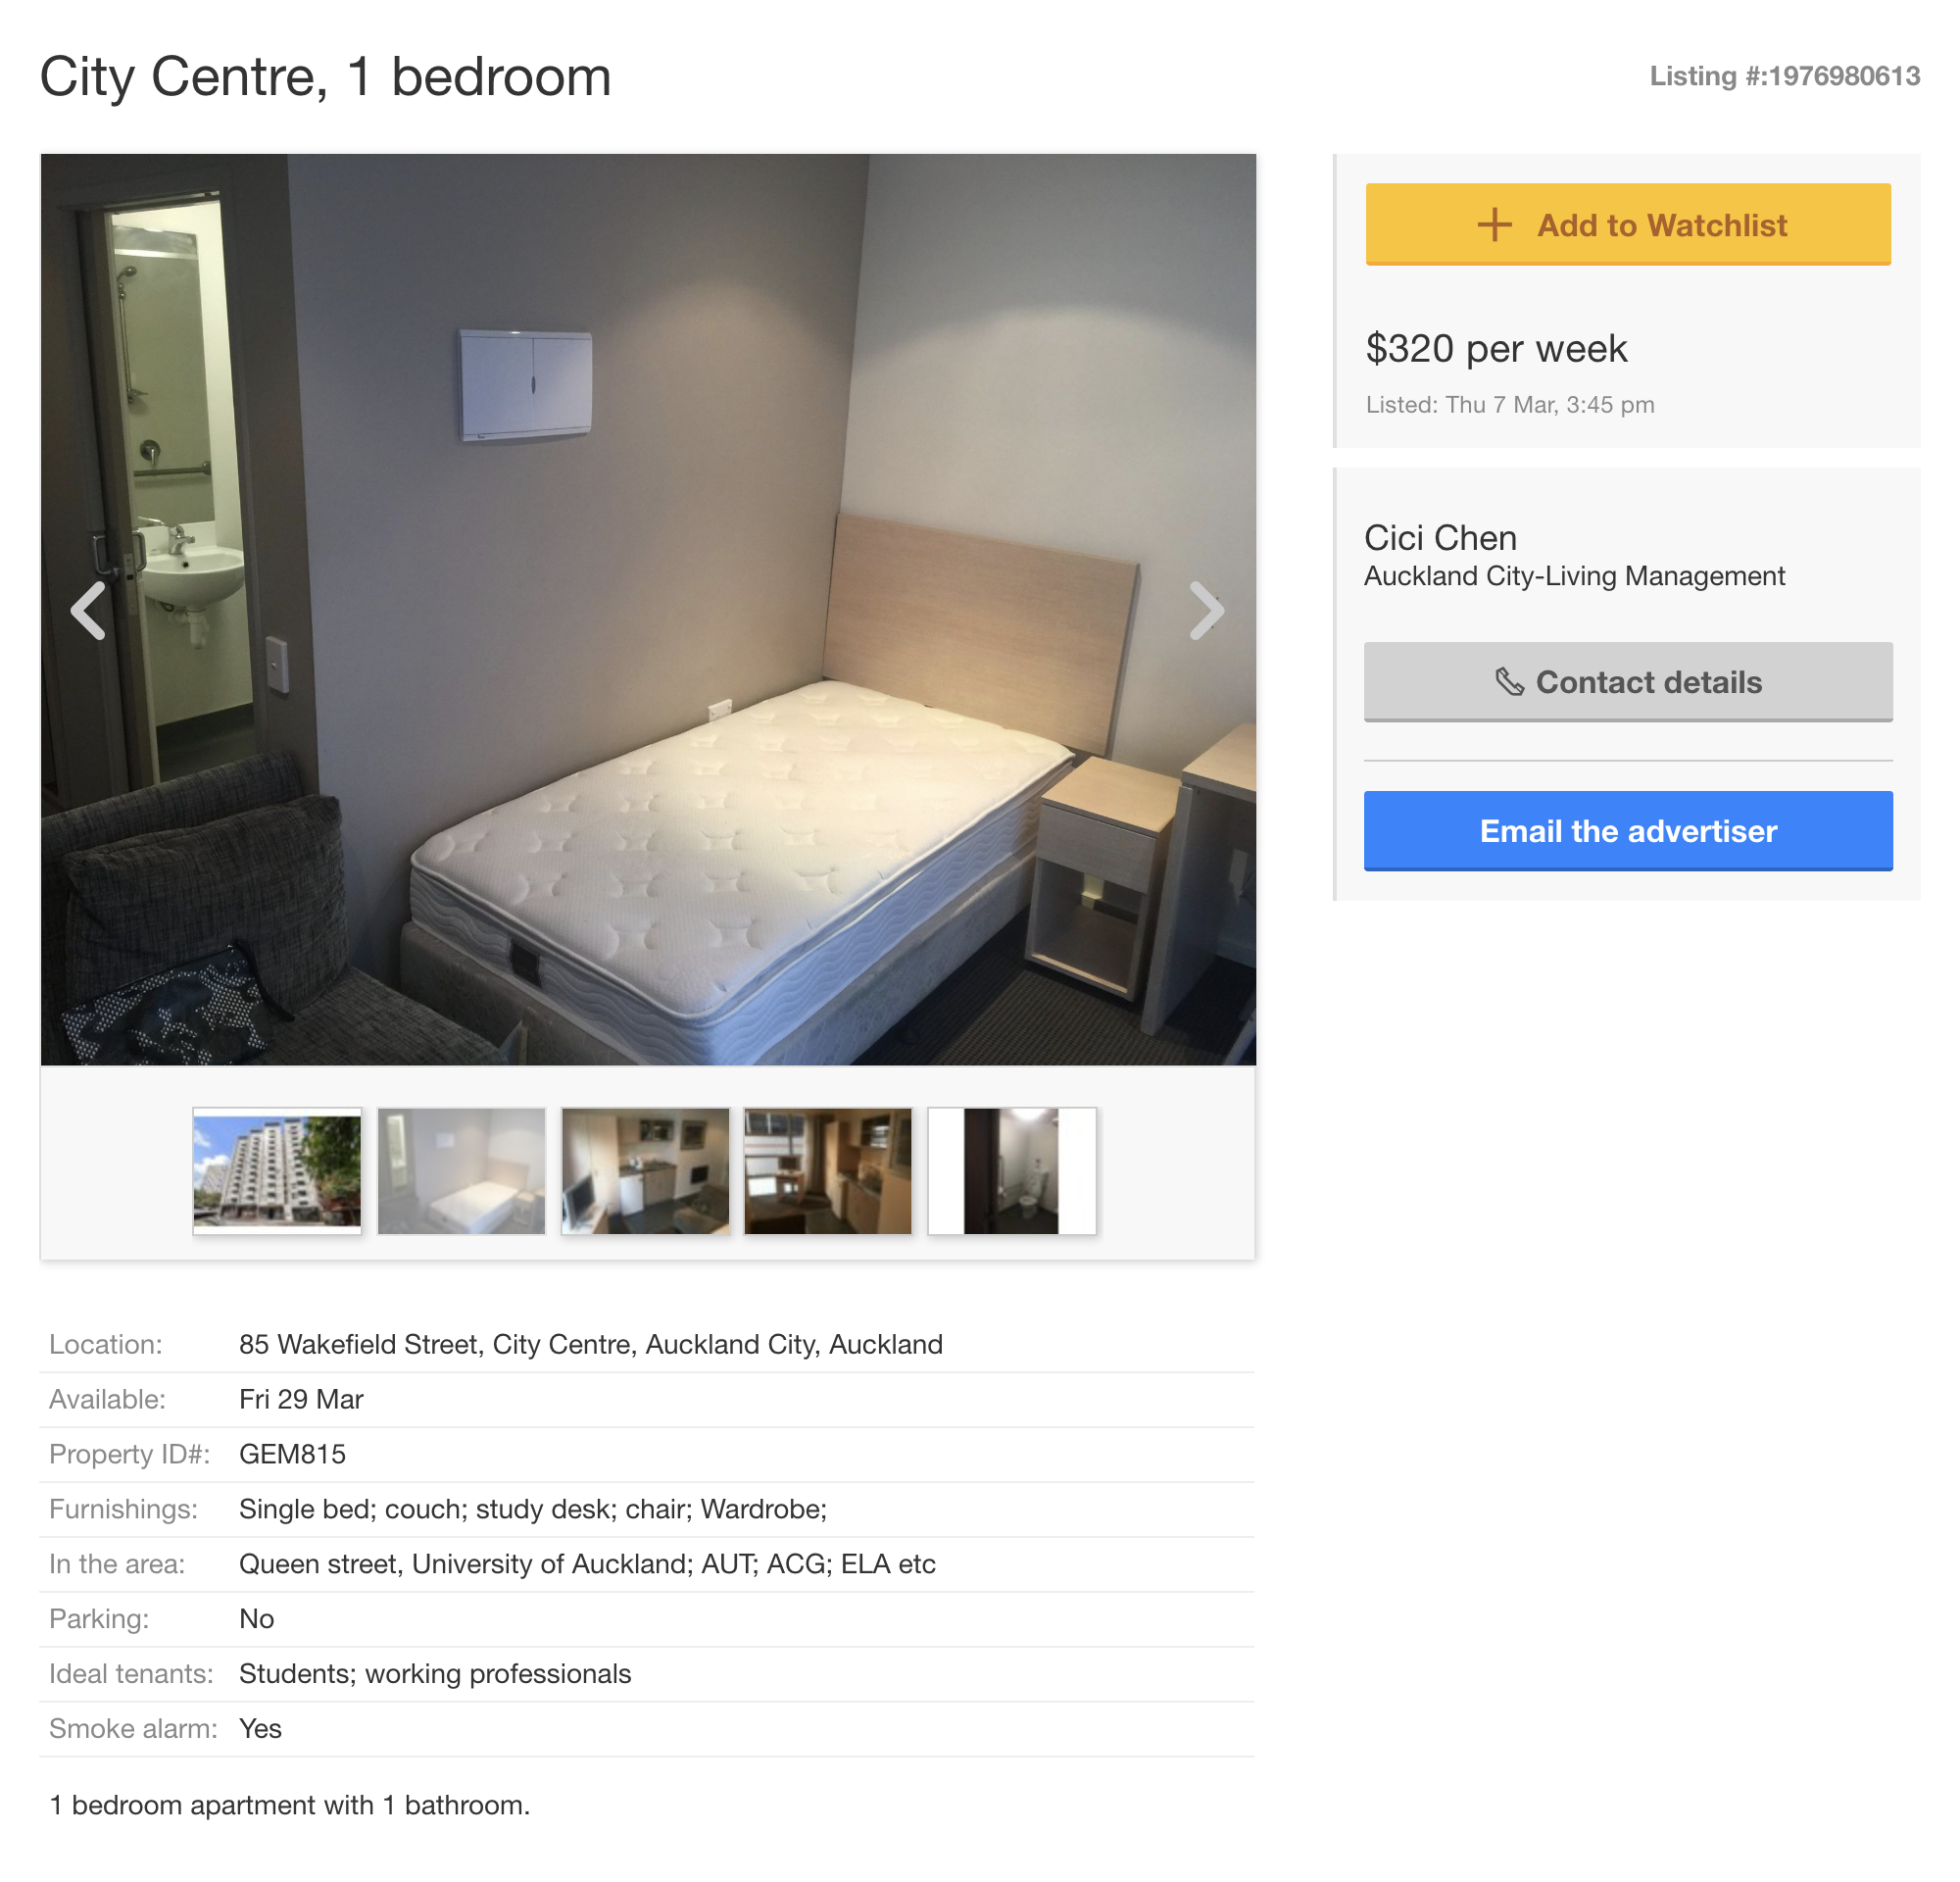 Квартира с одной спальней в центре Окленда, сдается специально для студентов или работников. 320 $ (14 176 ₽) в неделю